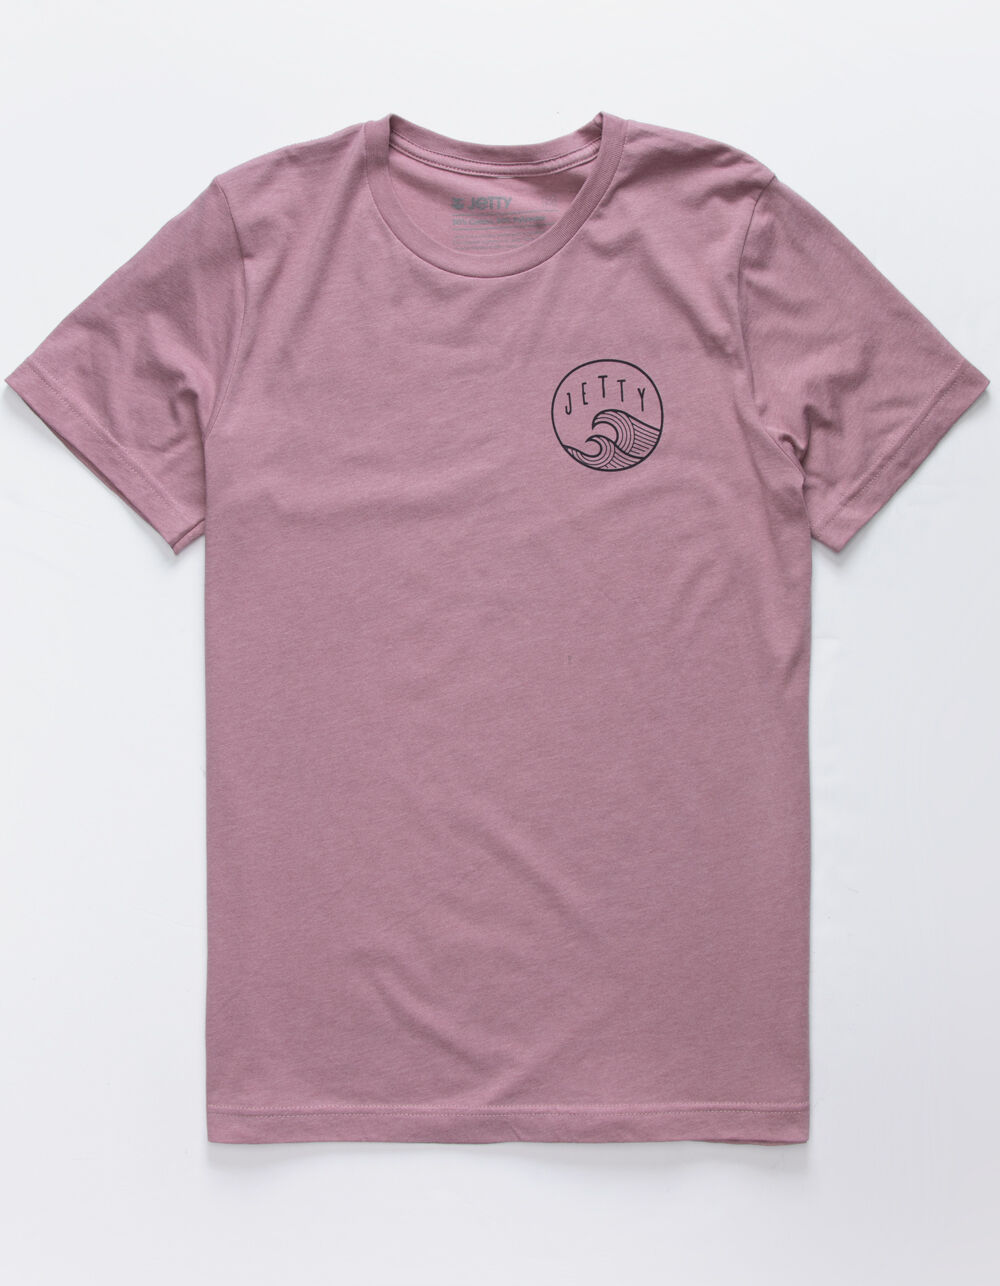 JETTY Sunswell Mens T-Shirt - MAUVE | Tillys